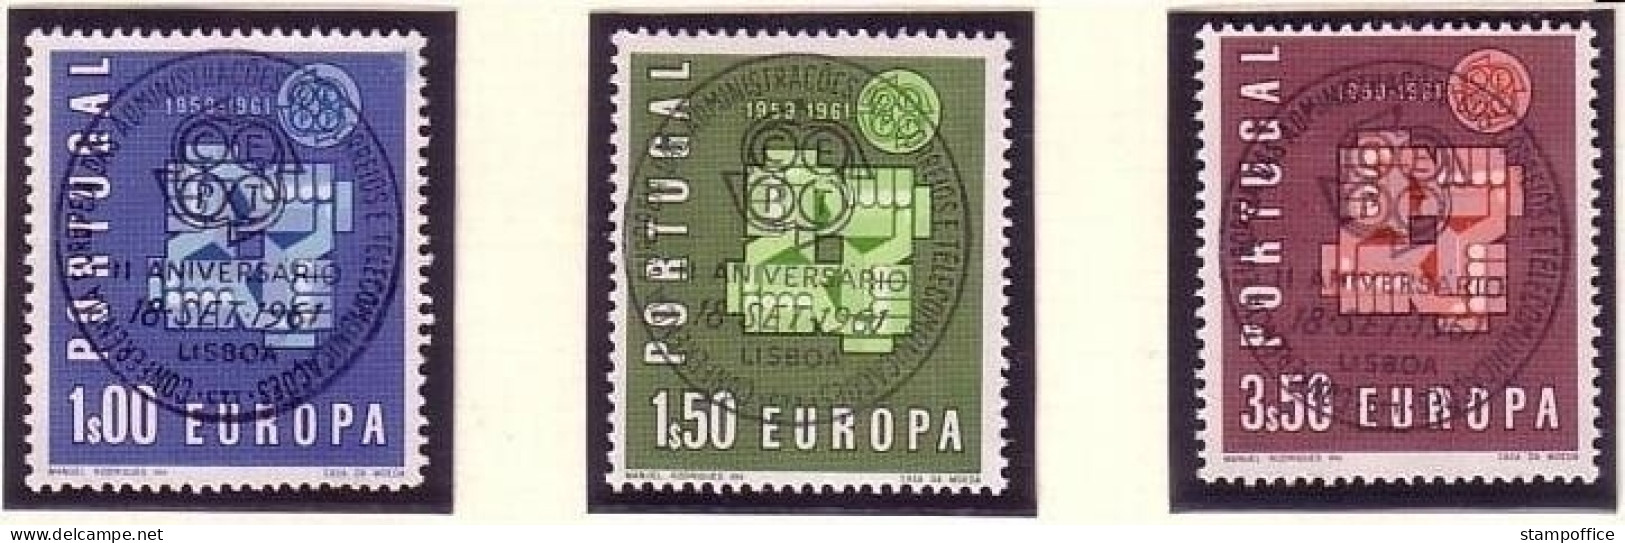 PORTUGAL MI-NR. 907-909 GESTEMPELT(USED) EUROPA 1961 TAUBE - 1961